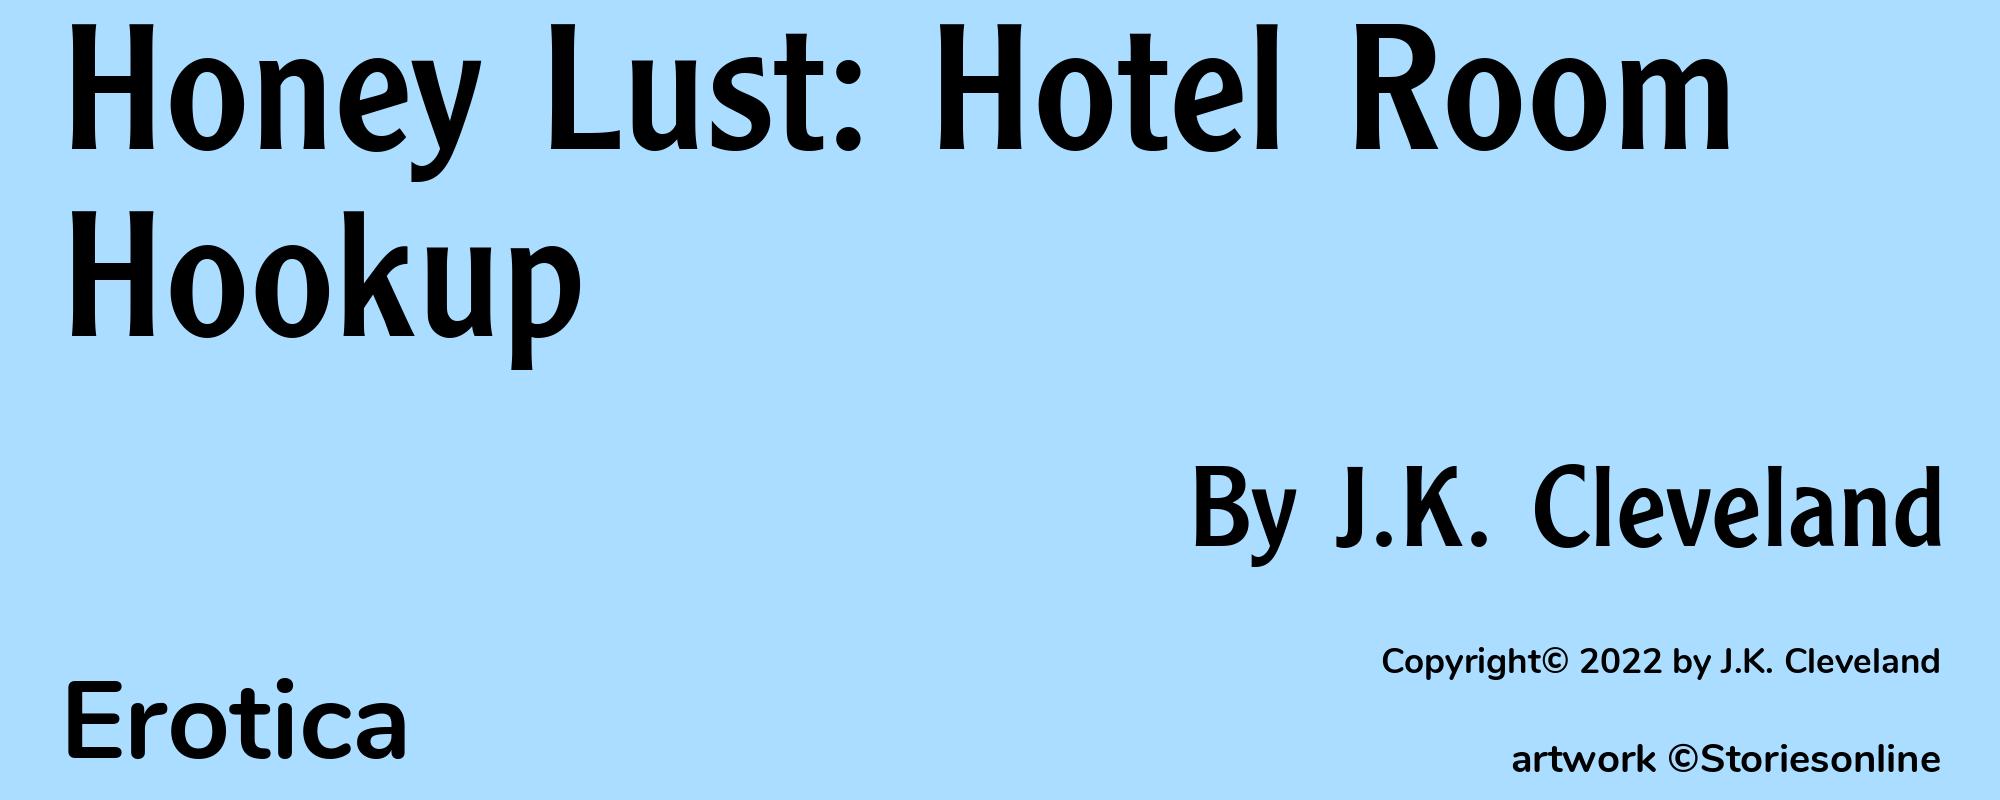 Honey Lust: Hotel Room Hookup - Cover